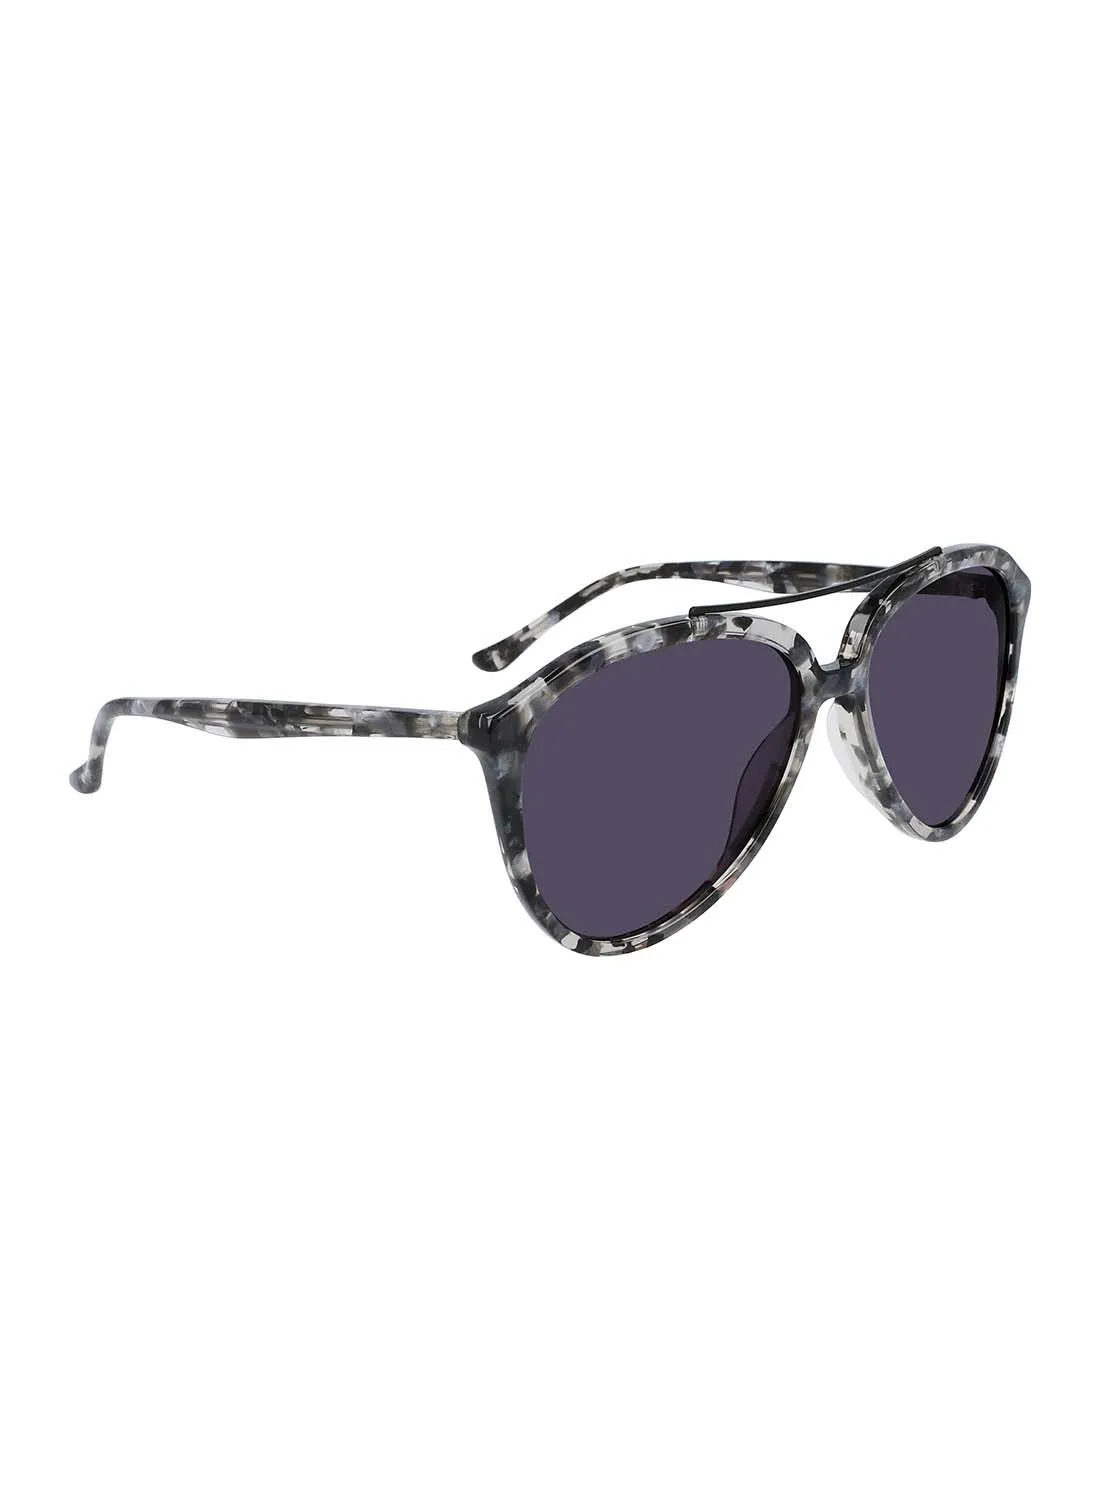 Donna Karan Women's Aviator Sunglasses - 46867-561-5615 - Lens Size: 56 Mm